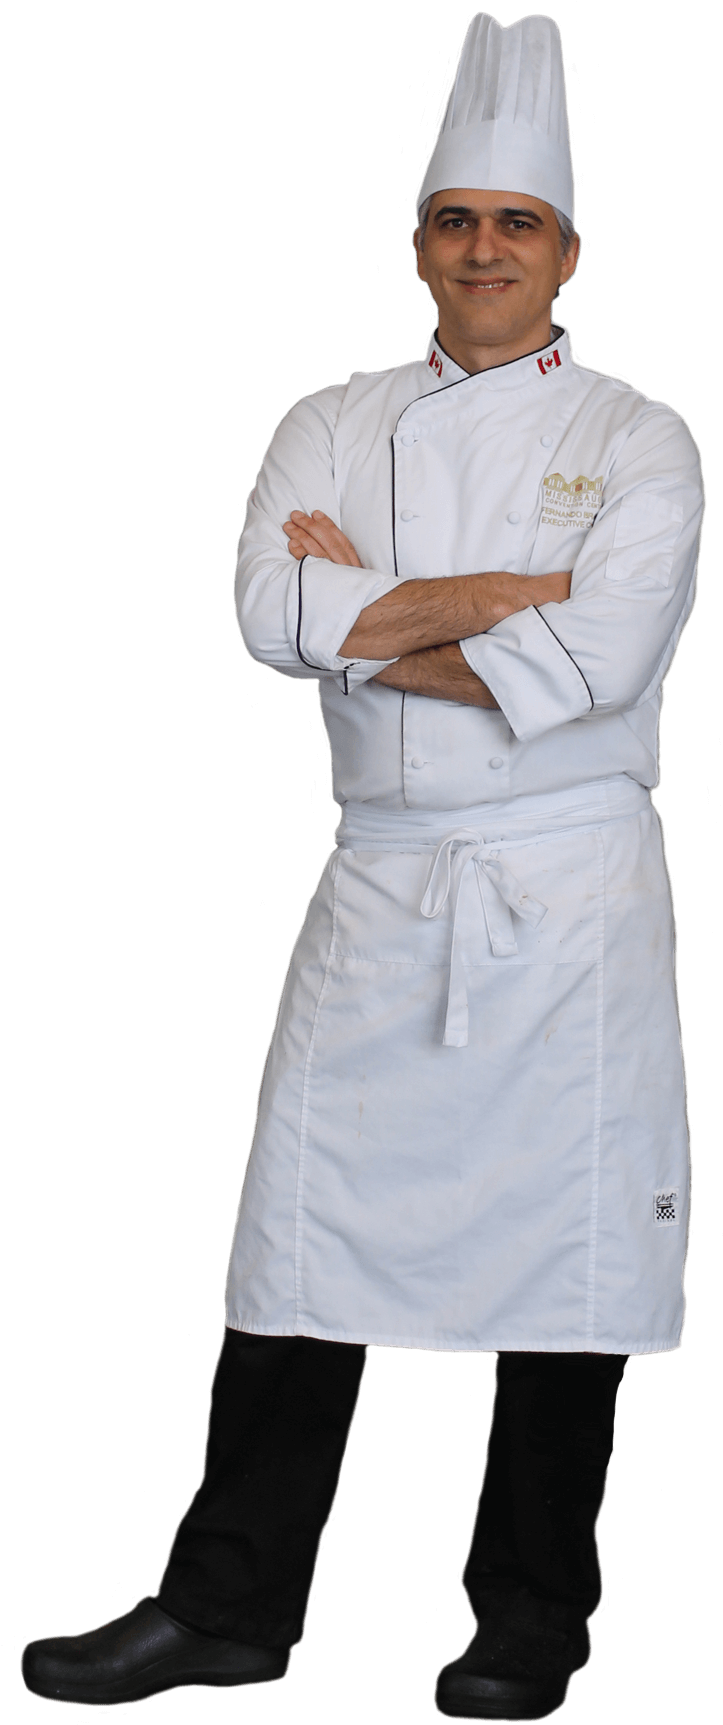 Professional Chef Portrait PNG